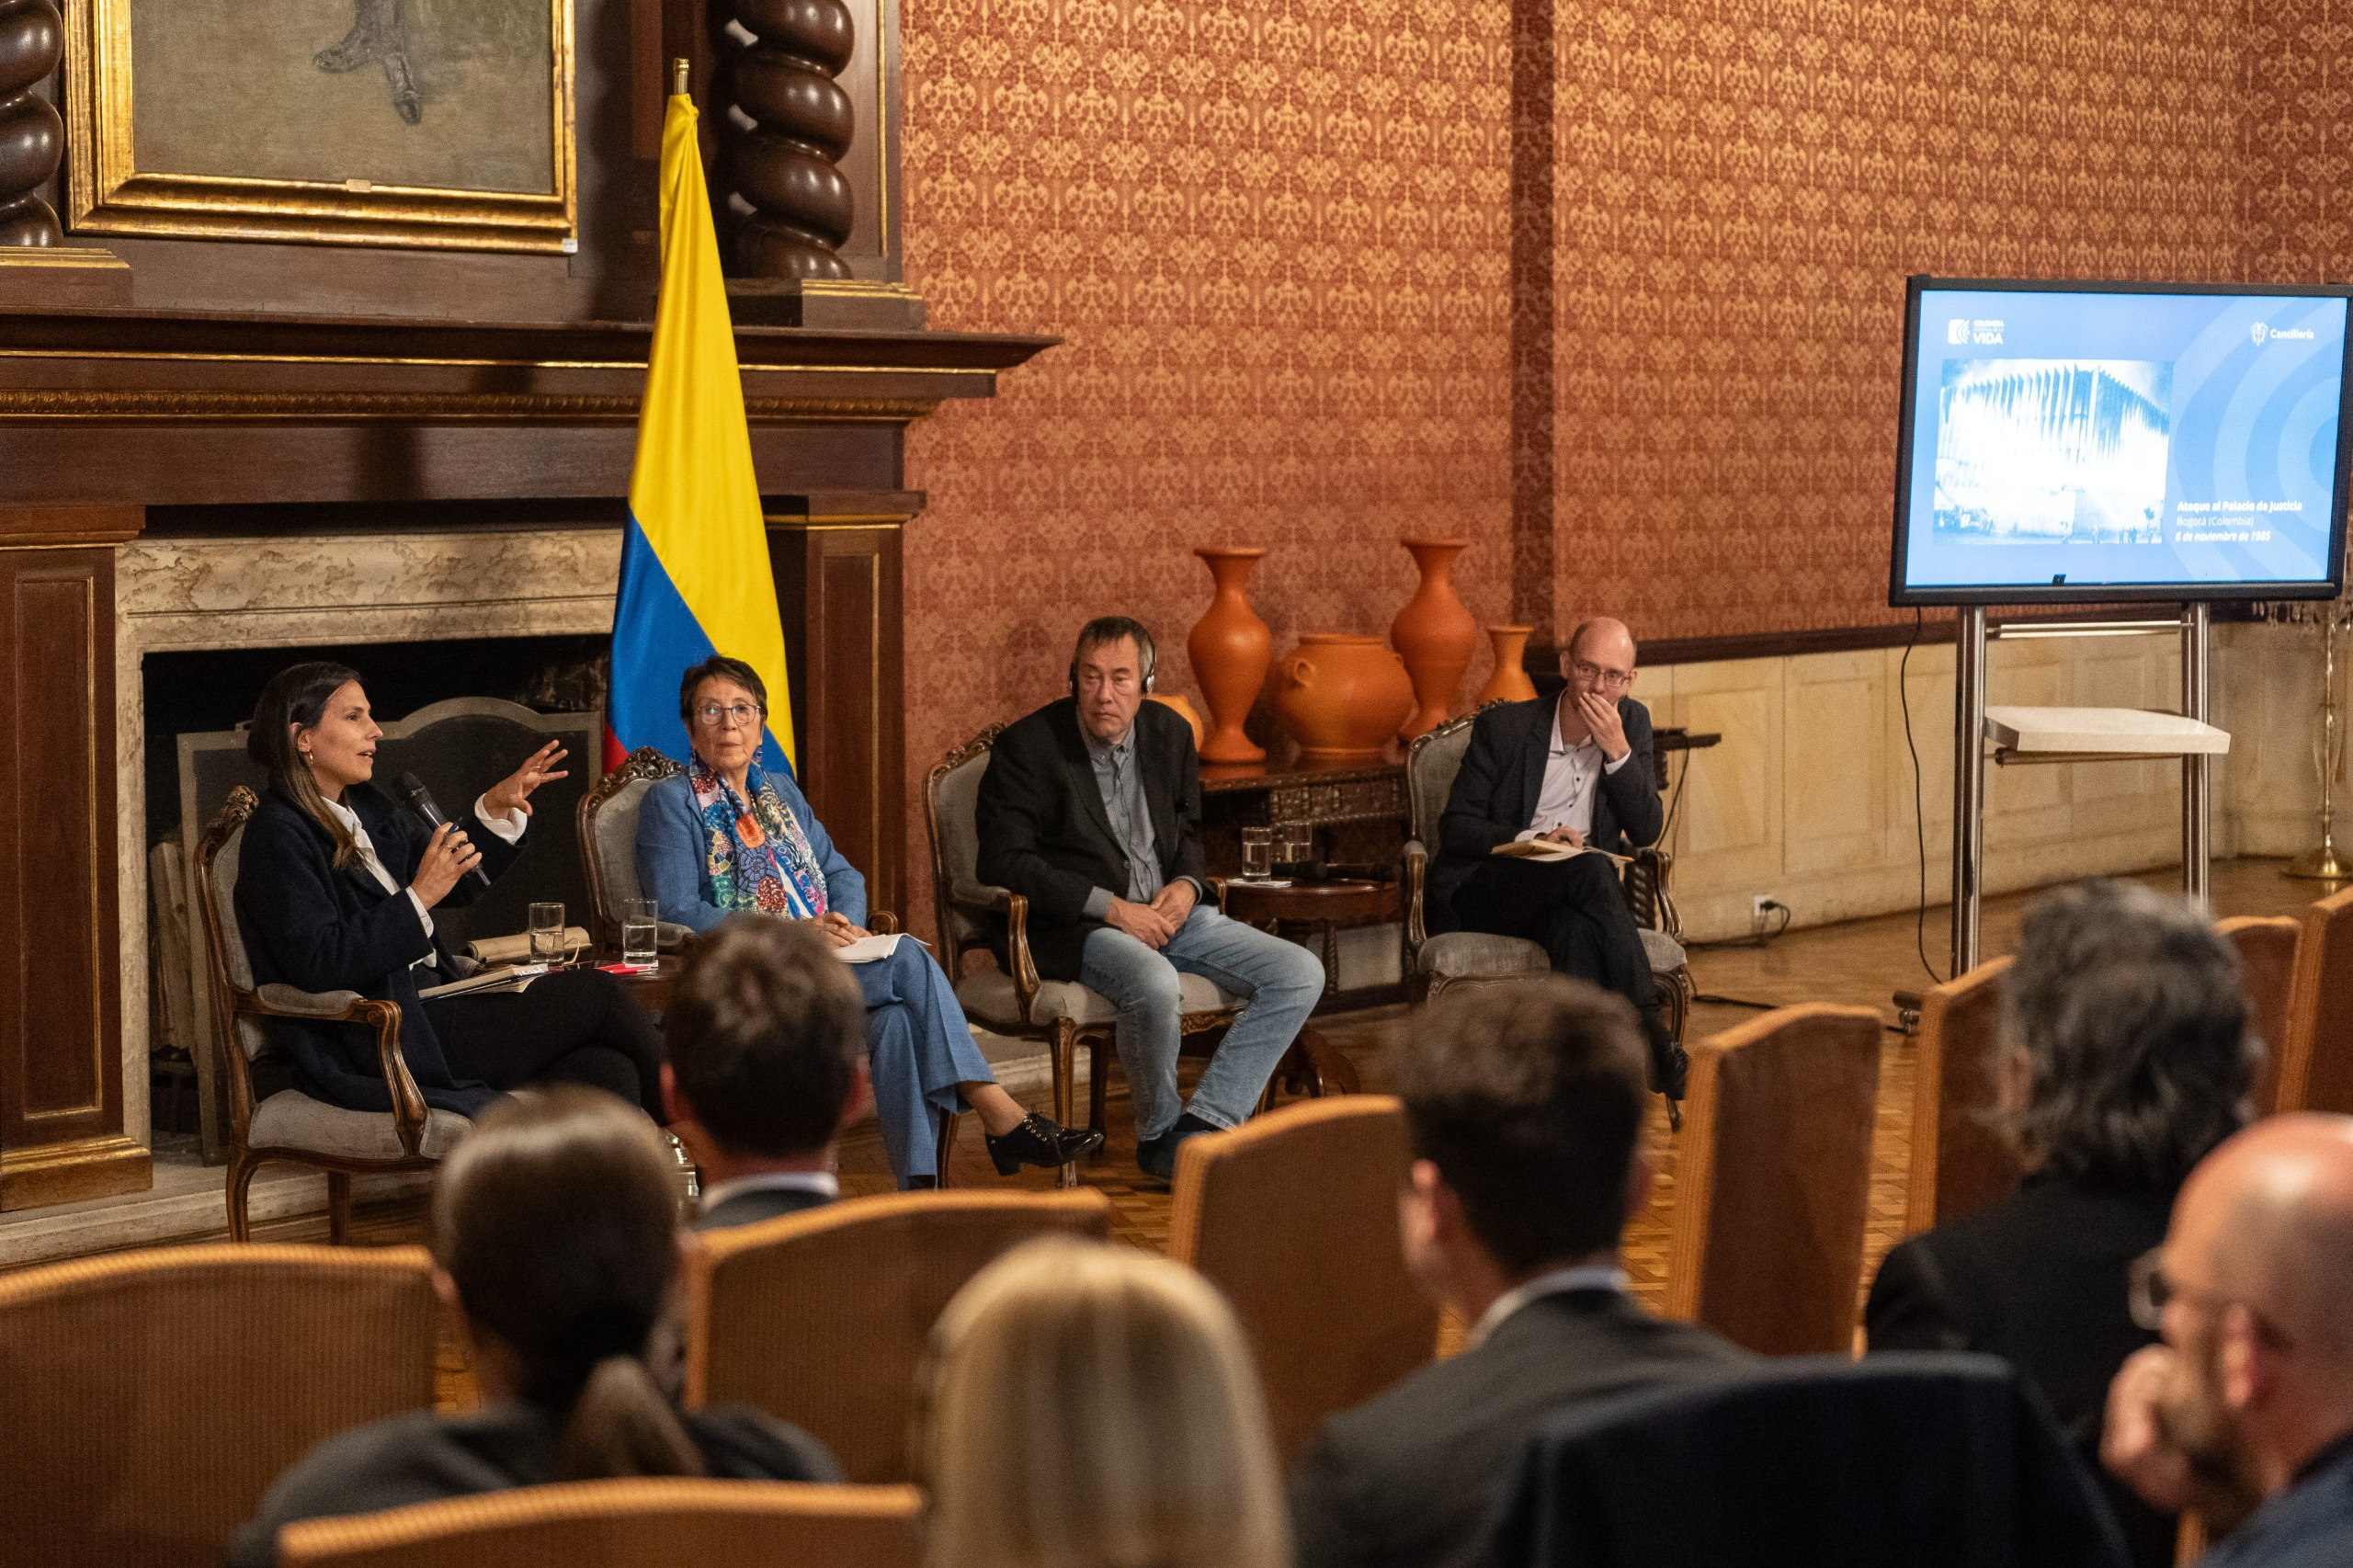 Cancillería lideró panel sobre superación del negacionismo frente a ataques a instituciones democráticas, una conversación sobre hechos ocurridos en Colombia, Chile y Alemania